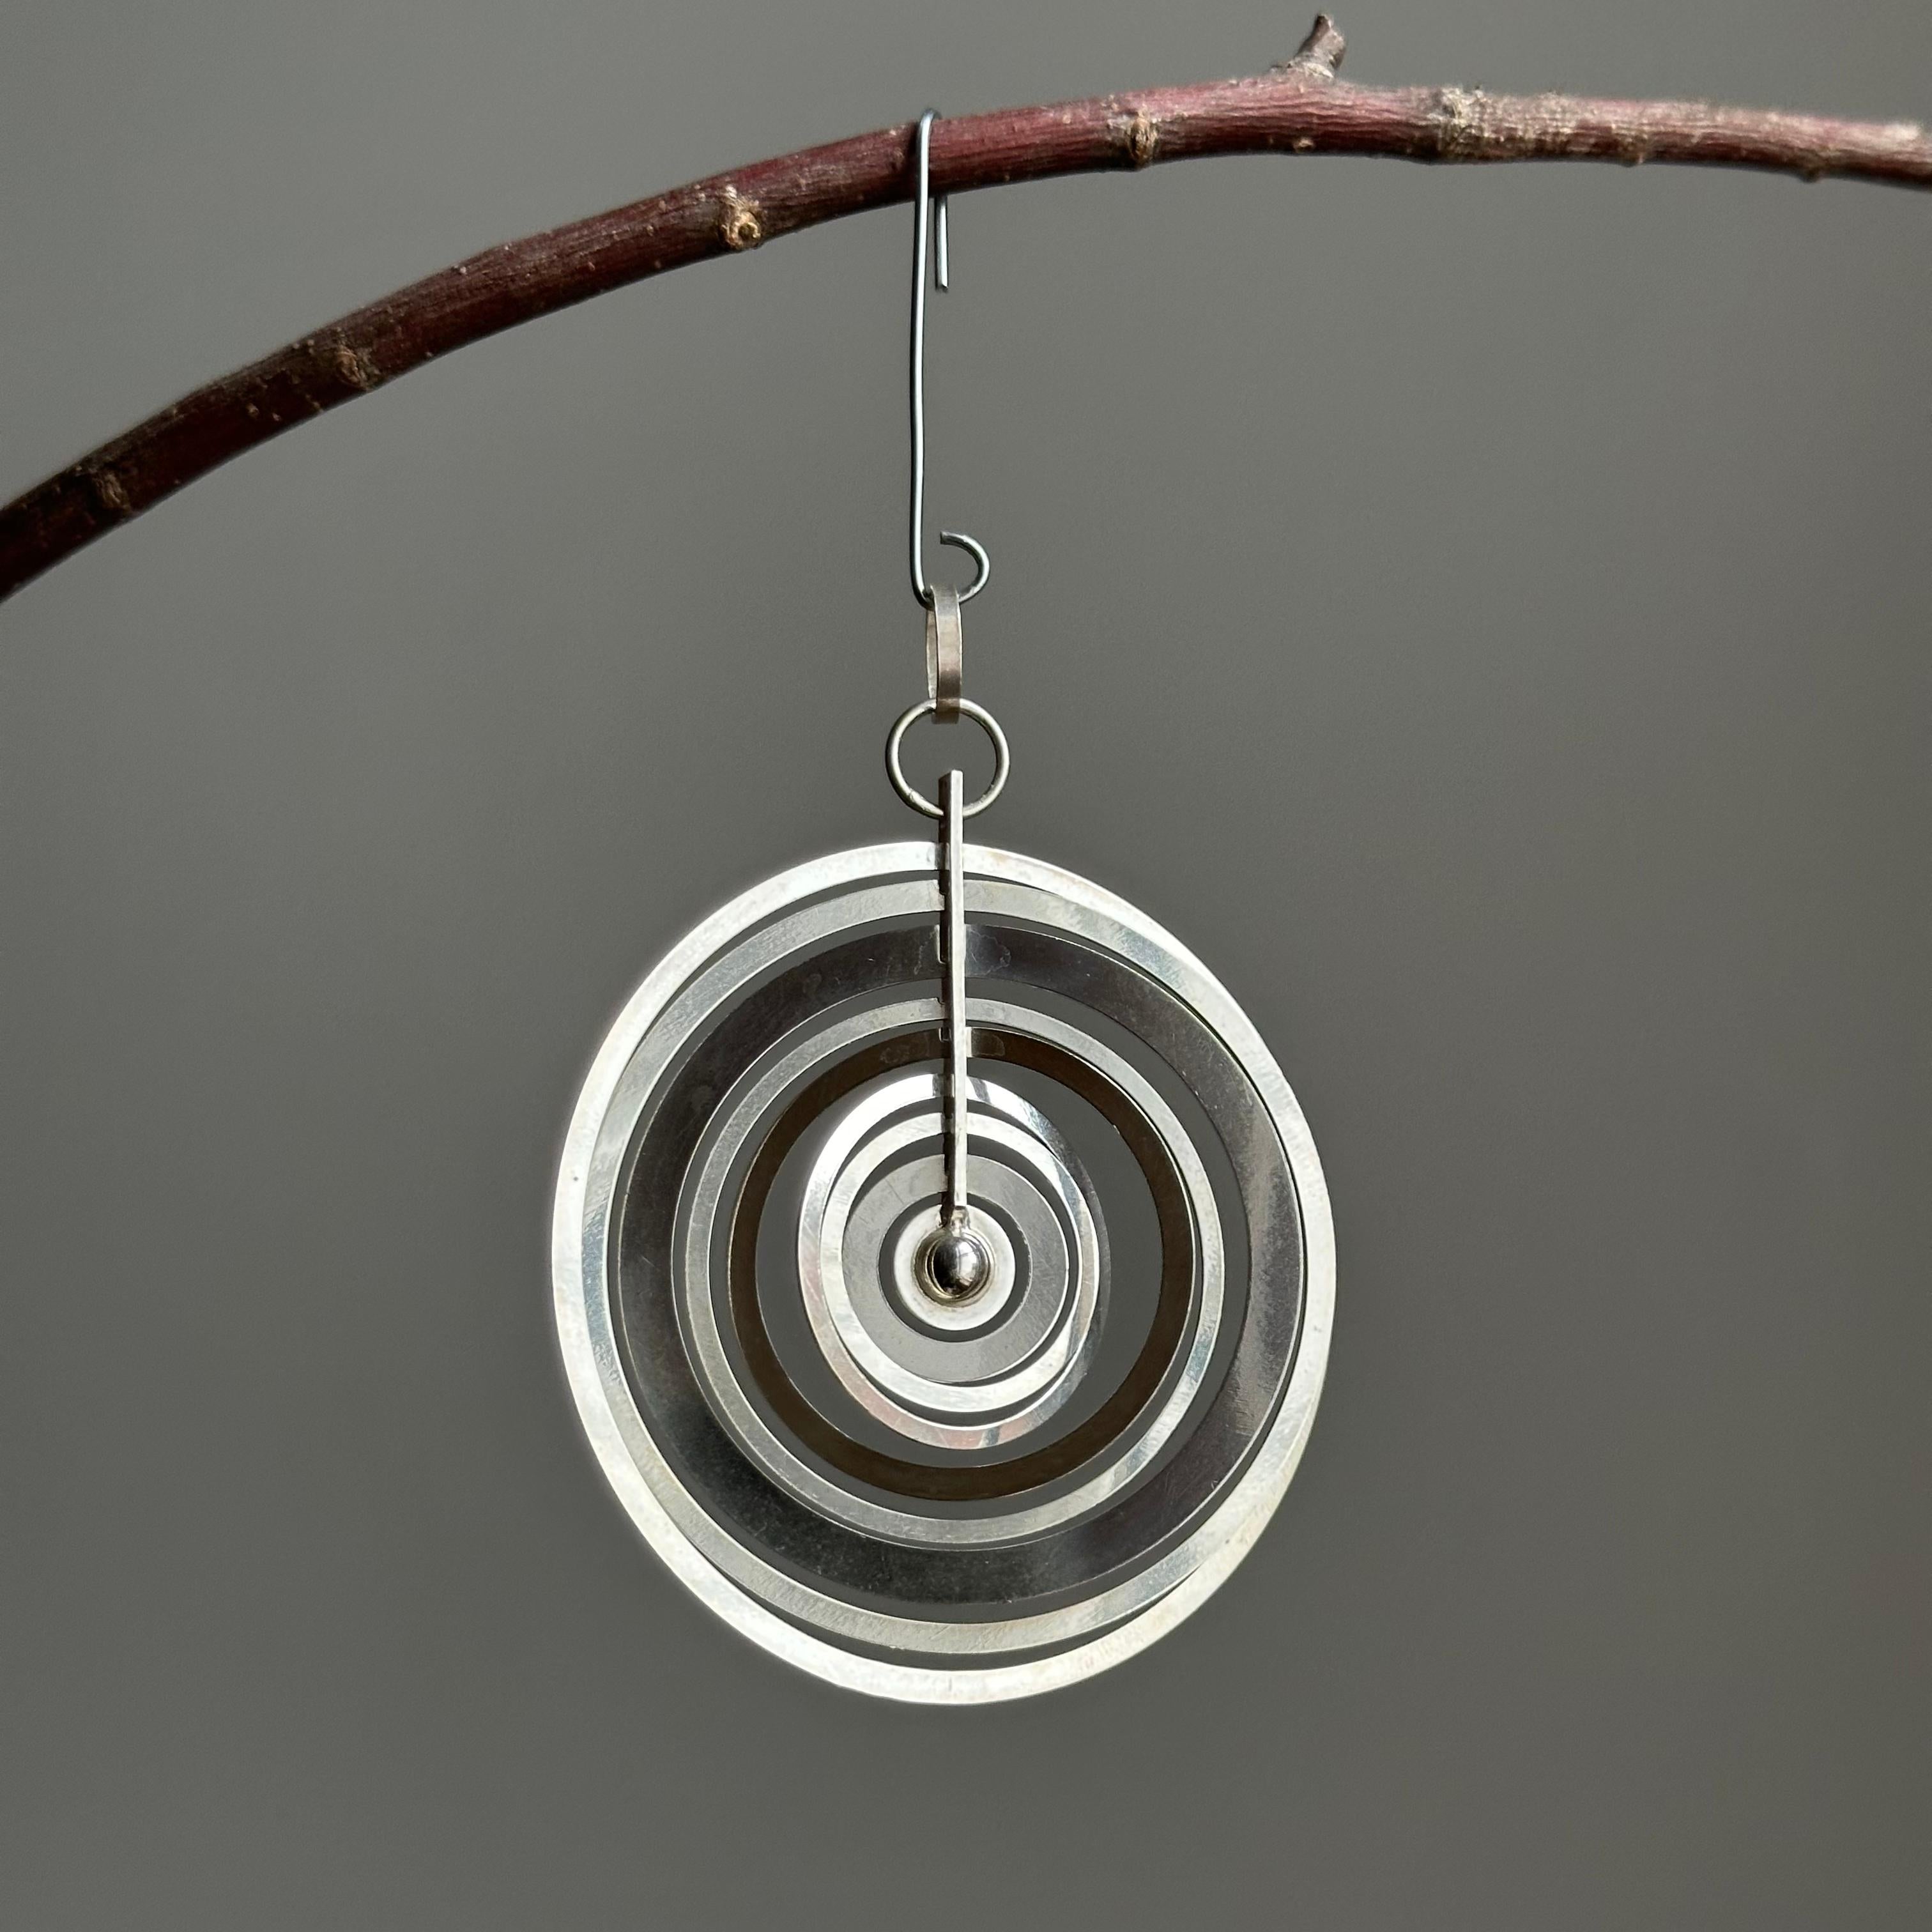 Hopeakuu (finnisch: Silbermond) Sterling-Anhänger, entworfen von Tapio Wirkkala. Er besteht aus neun konzentrischen Ringen, die sich unabhängig voneinander um eine kleine Kugel am Ende einer vertikalen Halterung bewegen und so ein tragbares